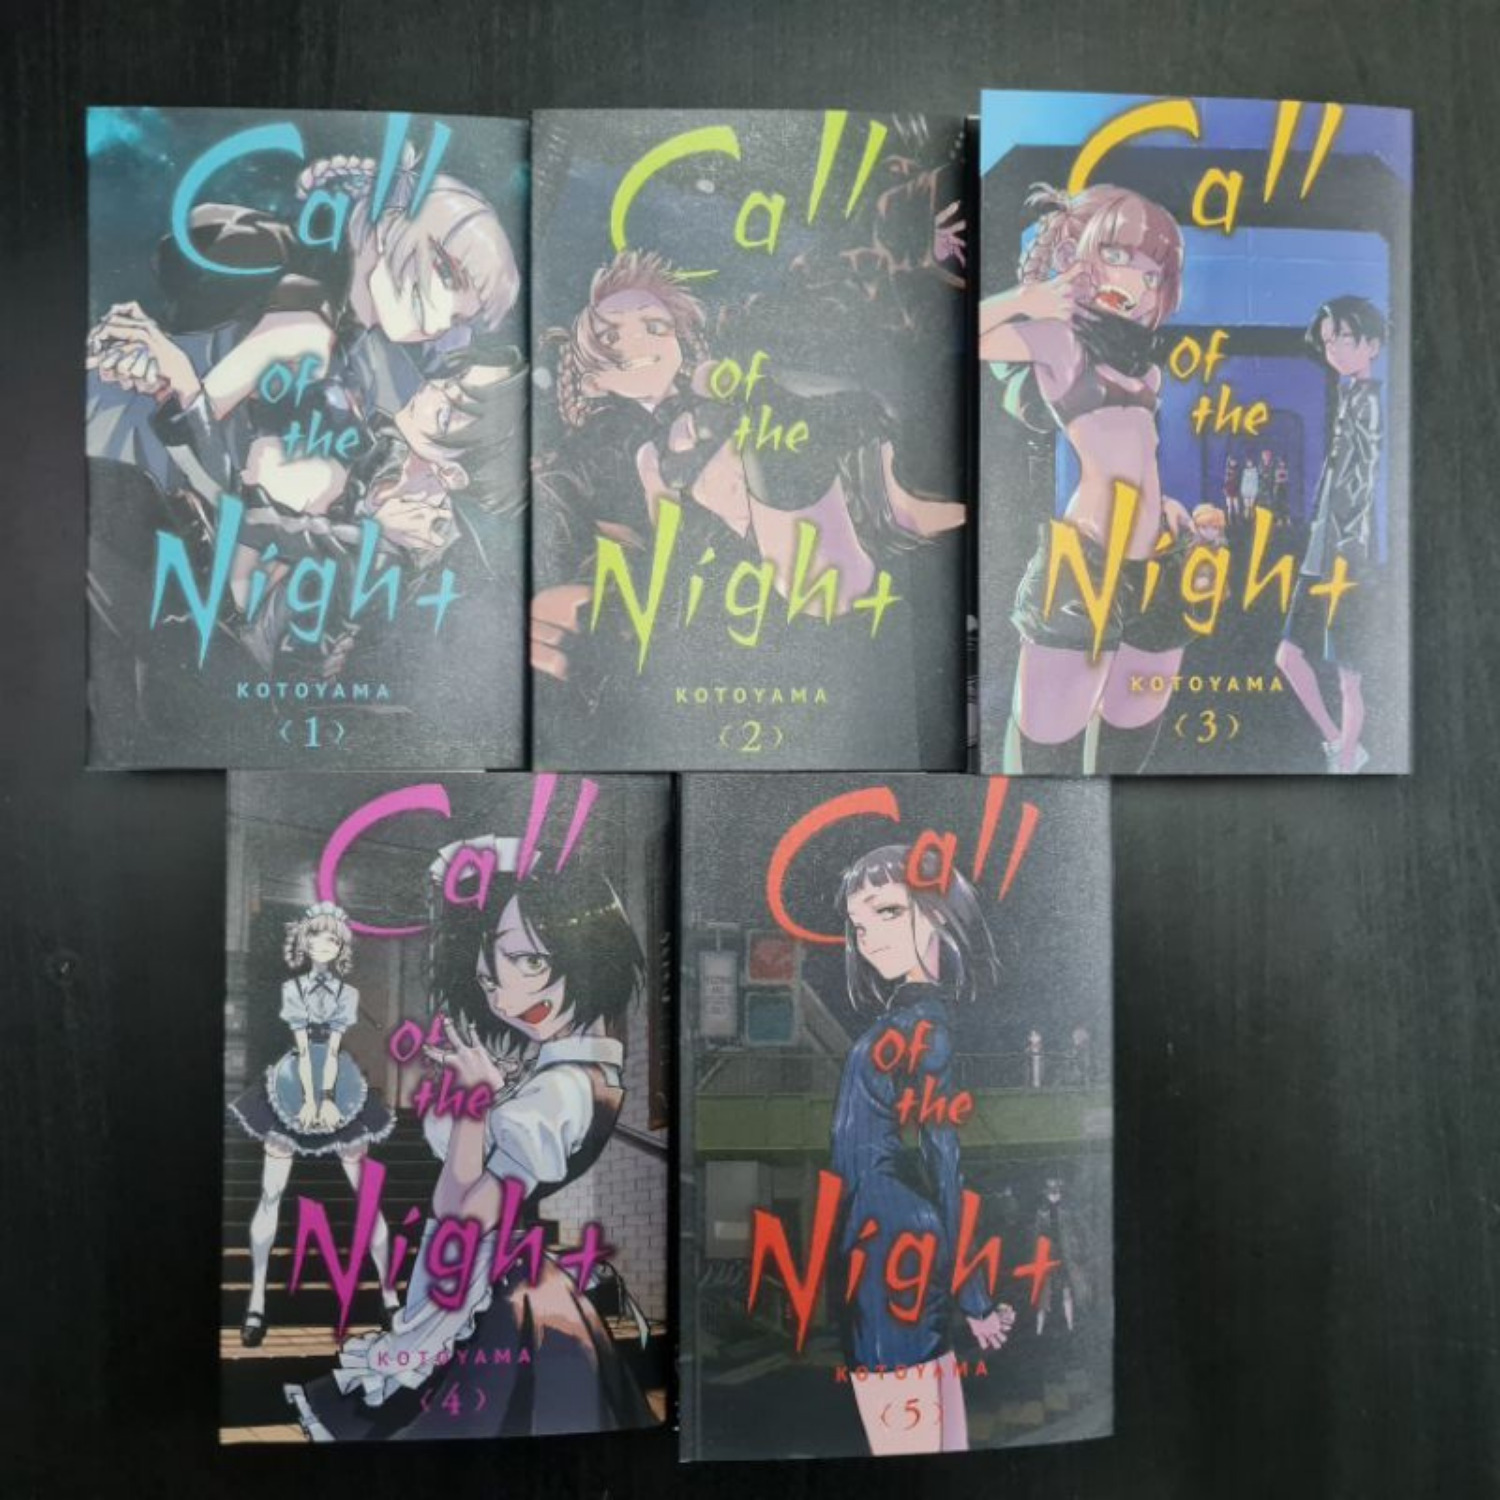  Call Of The Night Kotoyama Manga Anime Comic Volume 1-5 English Comic